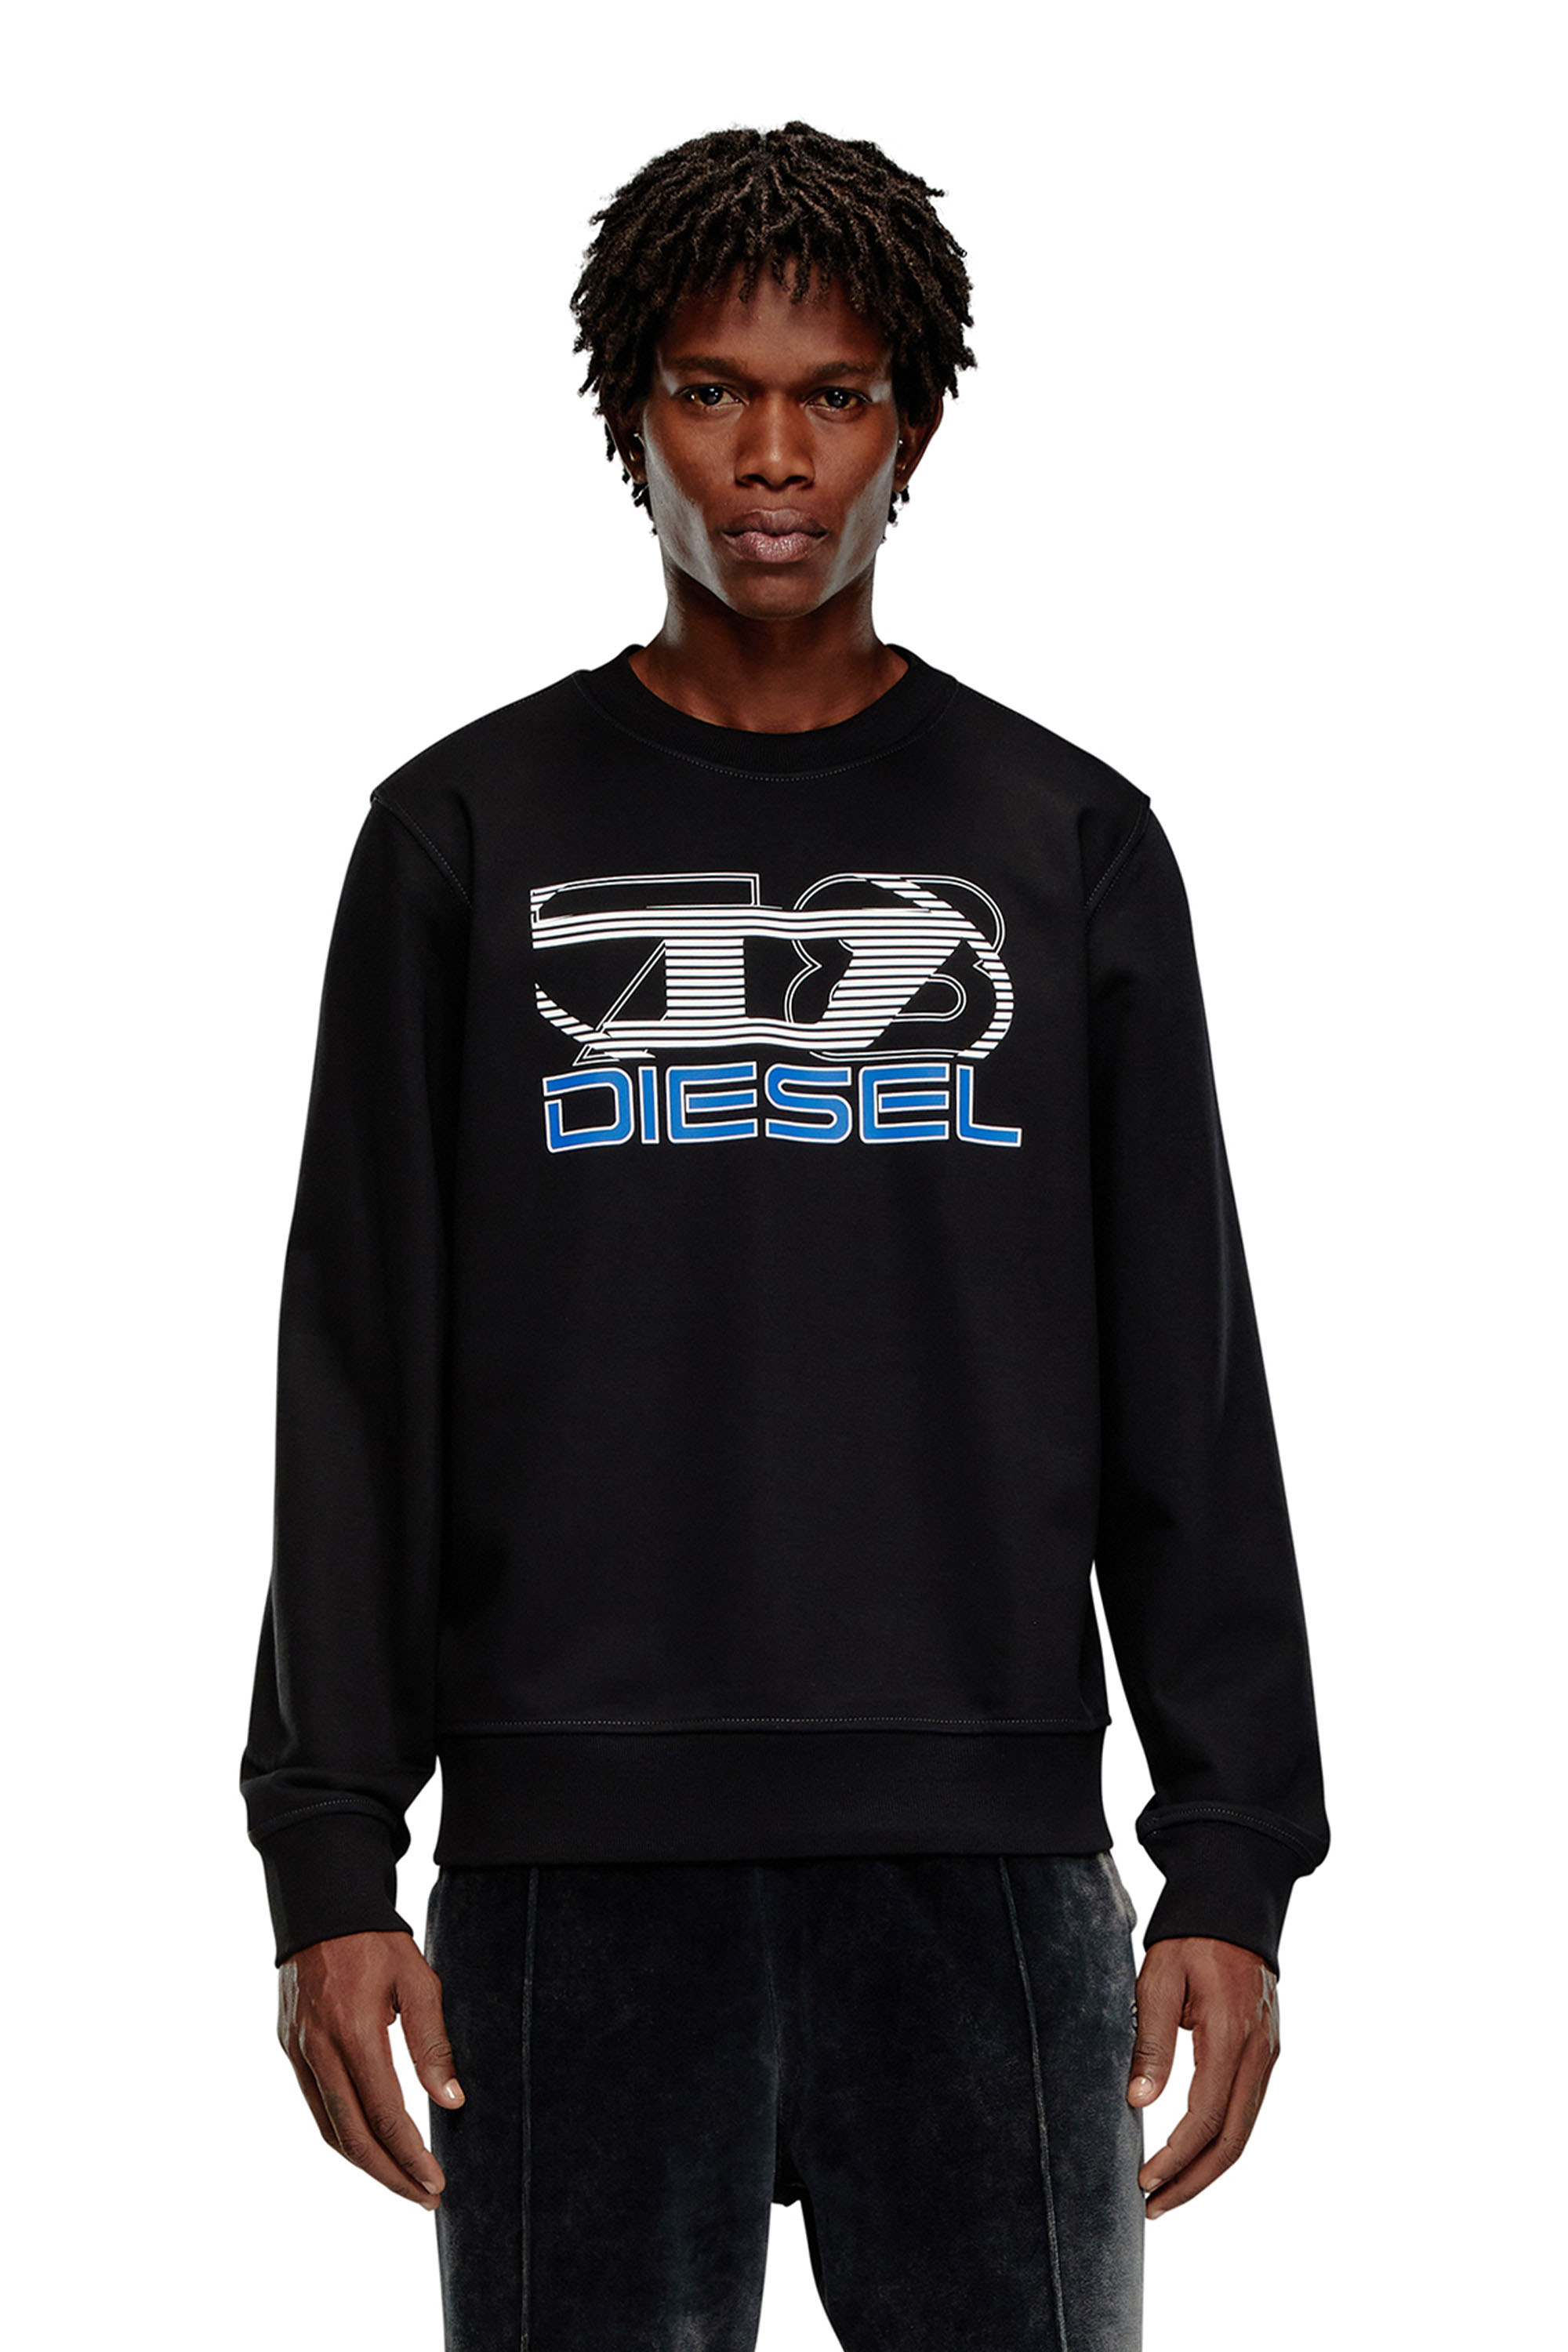 Diesel - Sweat-shirt avec logo imprimé - Pull Cotton - Homme - Noir